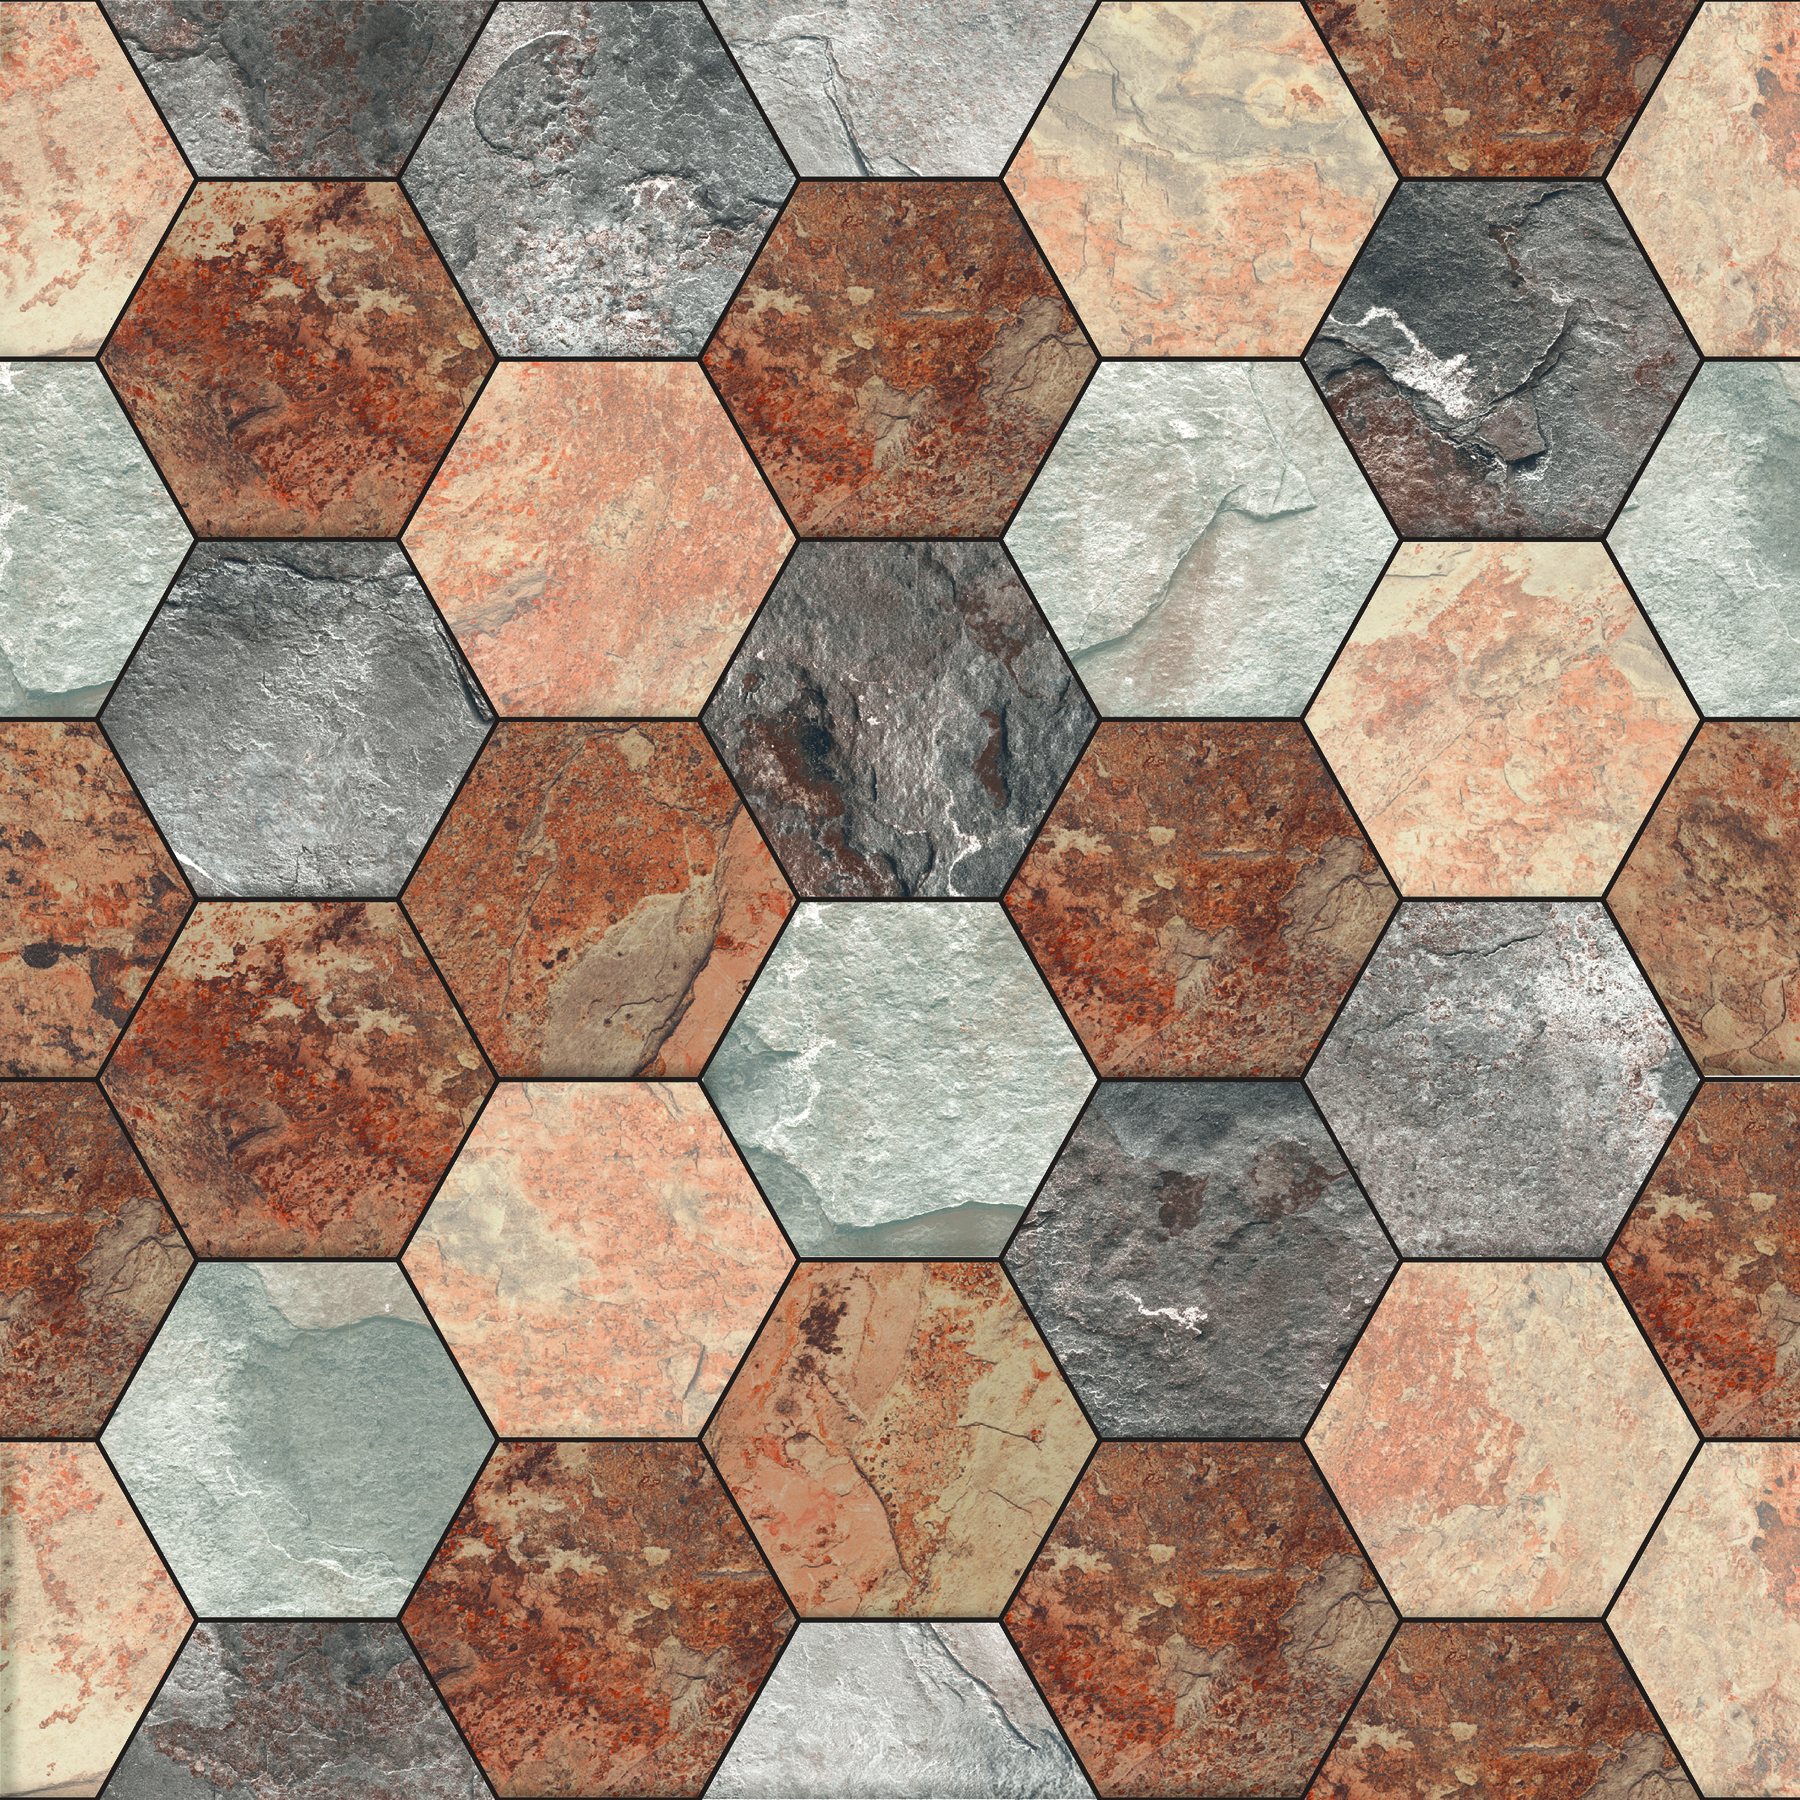 Fotografia. Mosaico composto por peças hexagonais de cores diferentes, intercaladas.